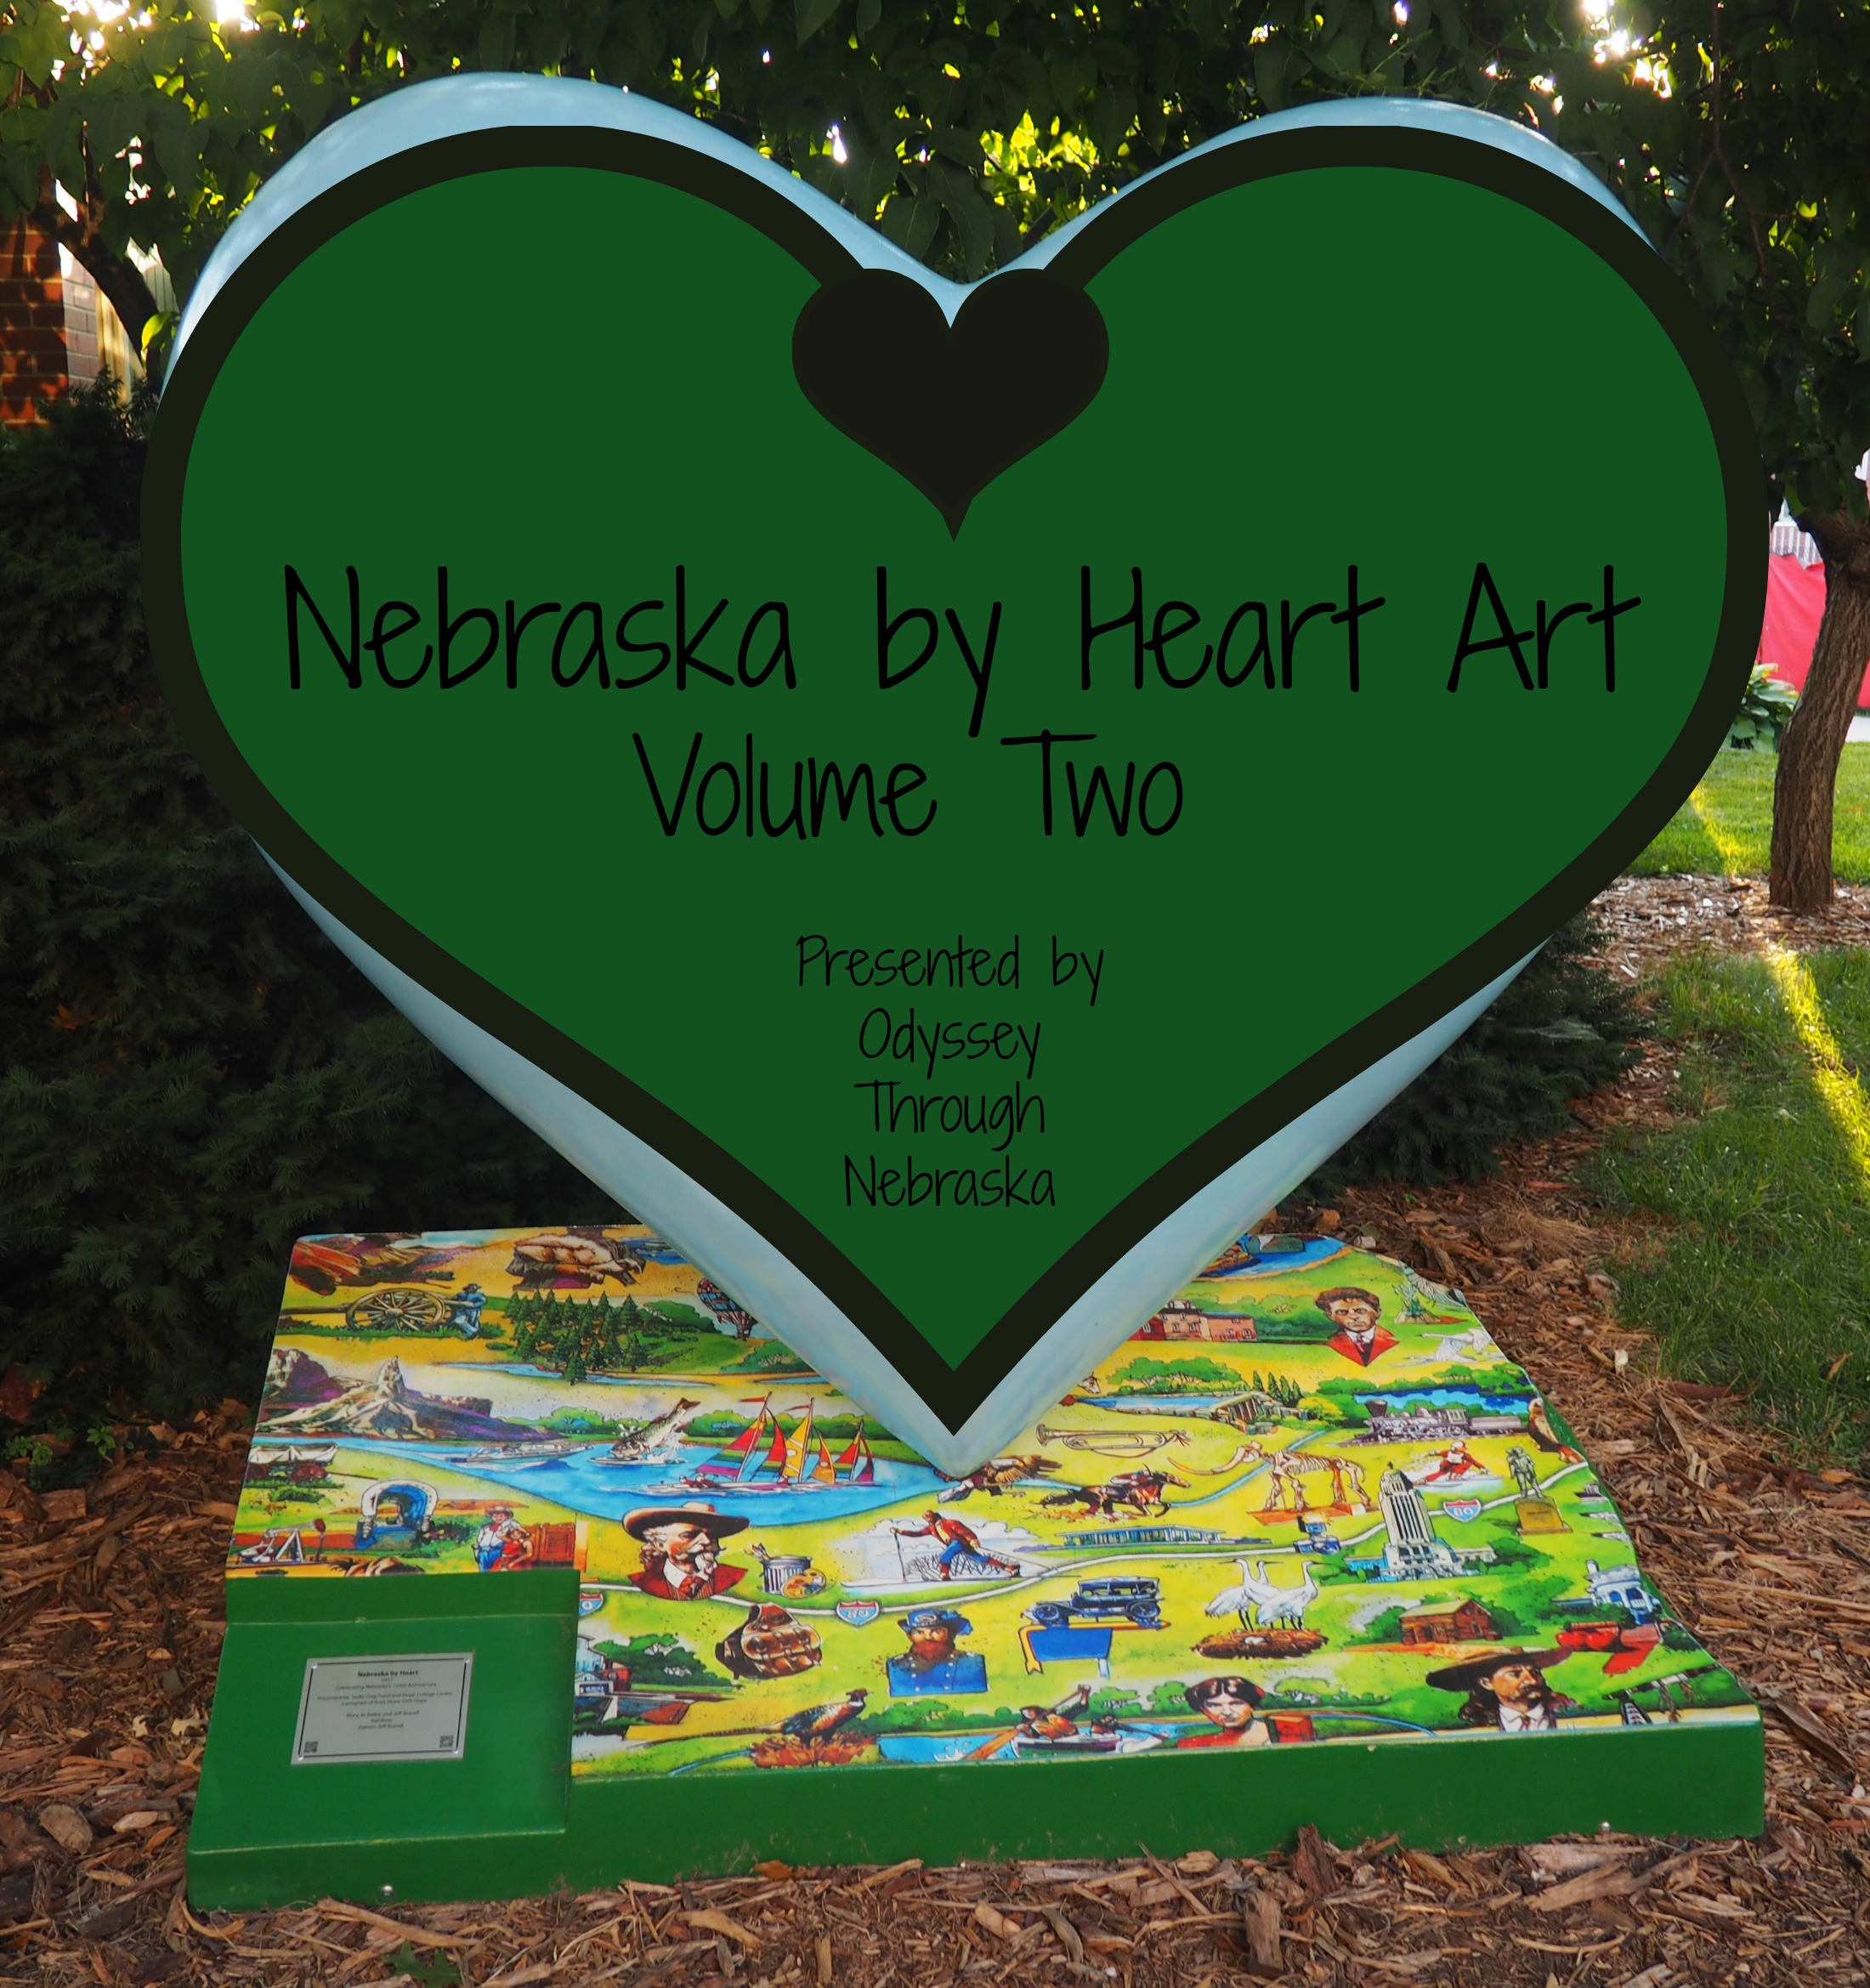 Nebraska by Heart Art Volume 2 in honor of the Nebraska sesquicentennial